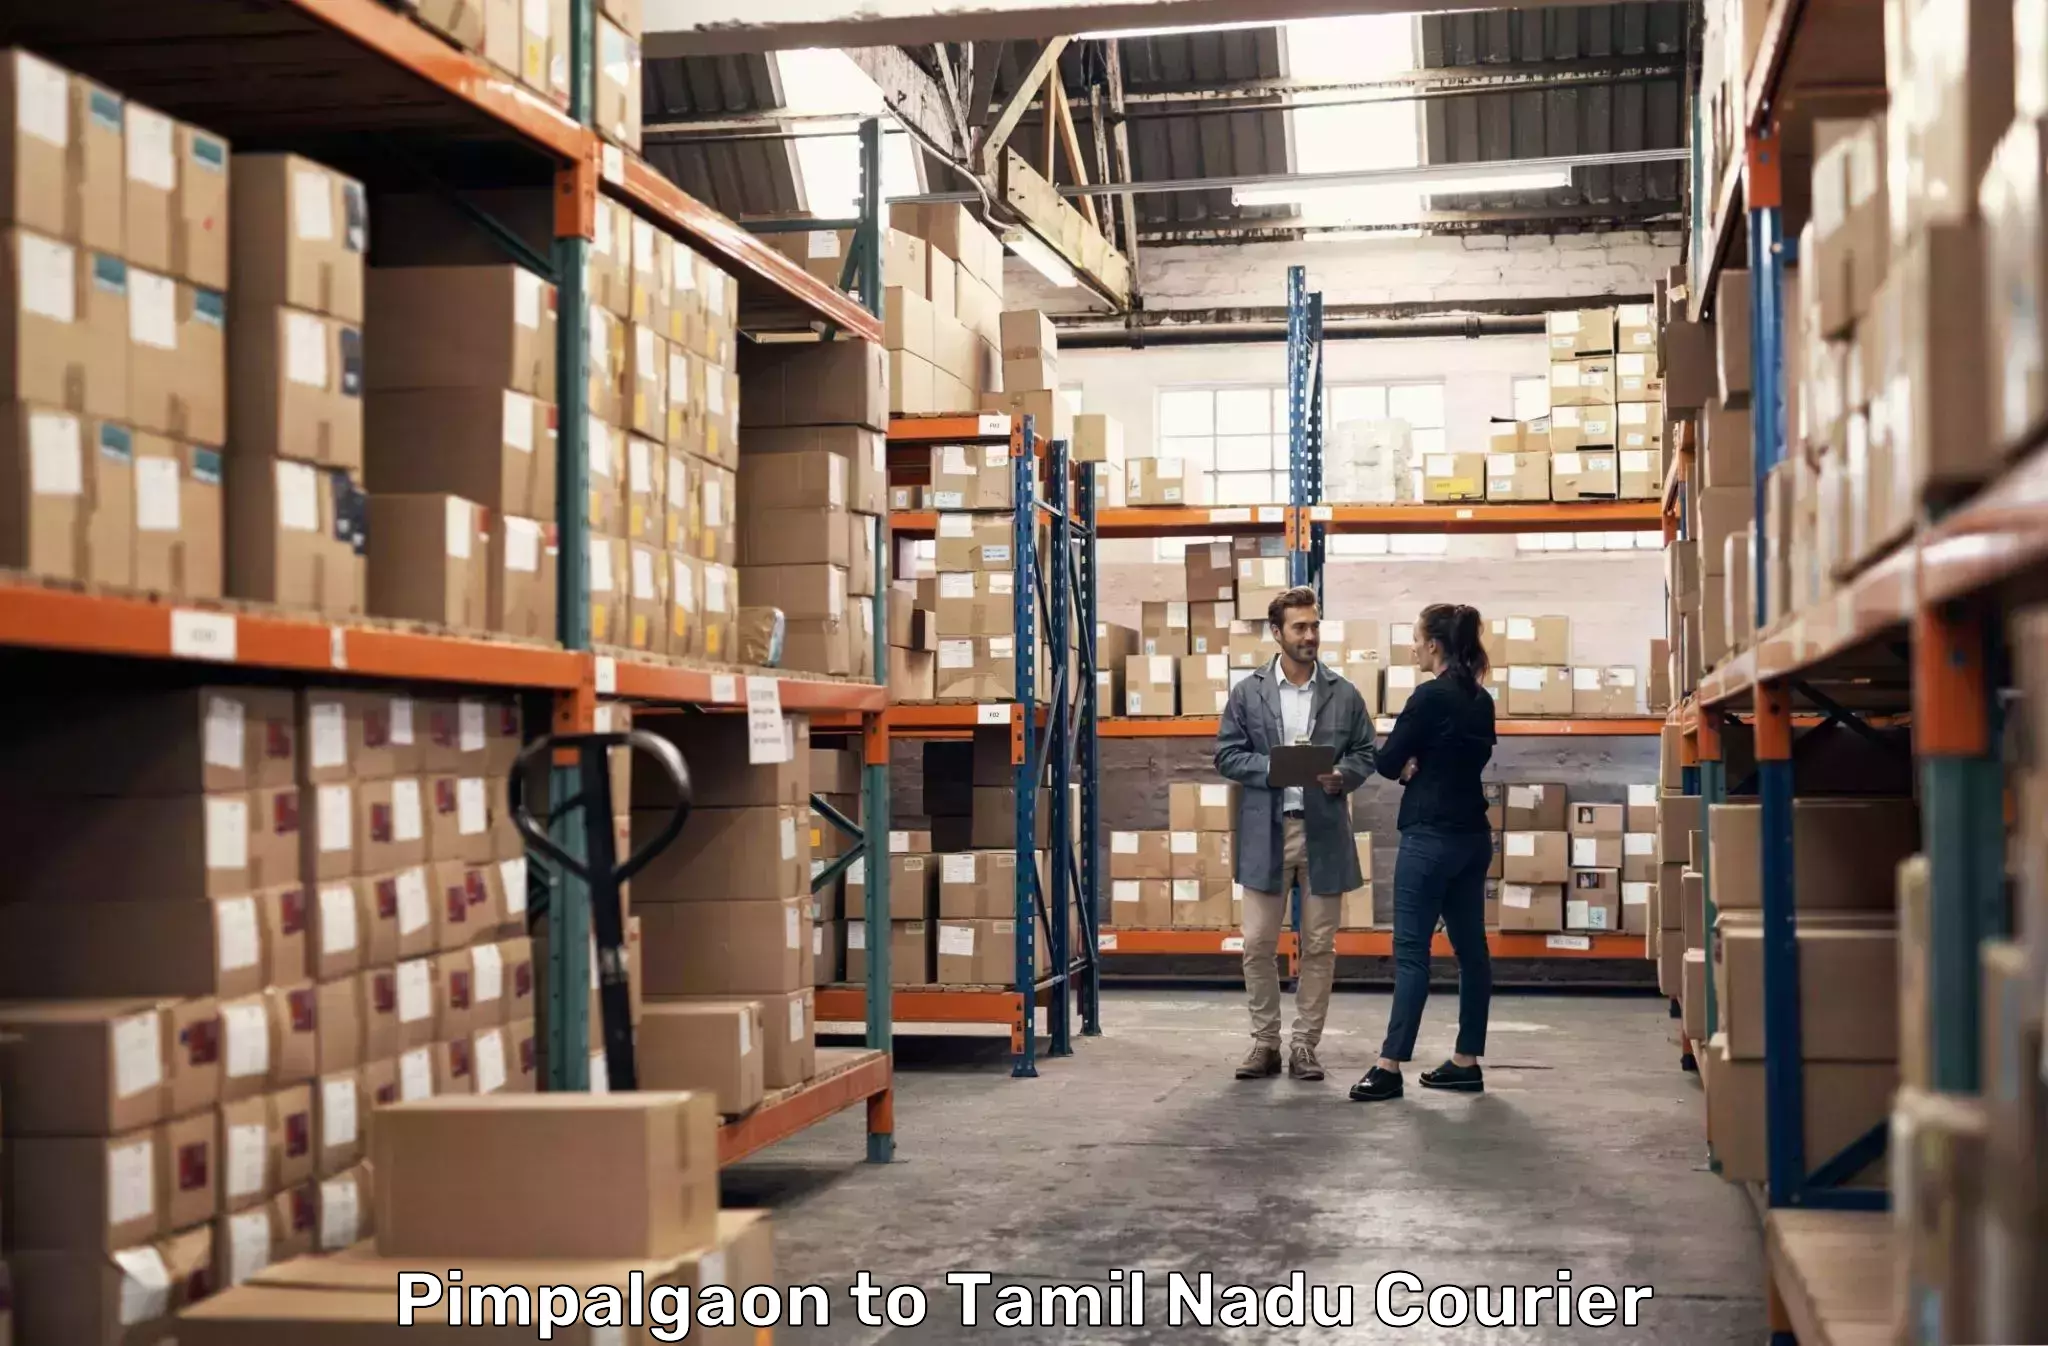 Courier service comparison Pimpalgaon to Thanjavur